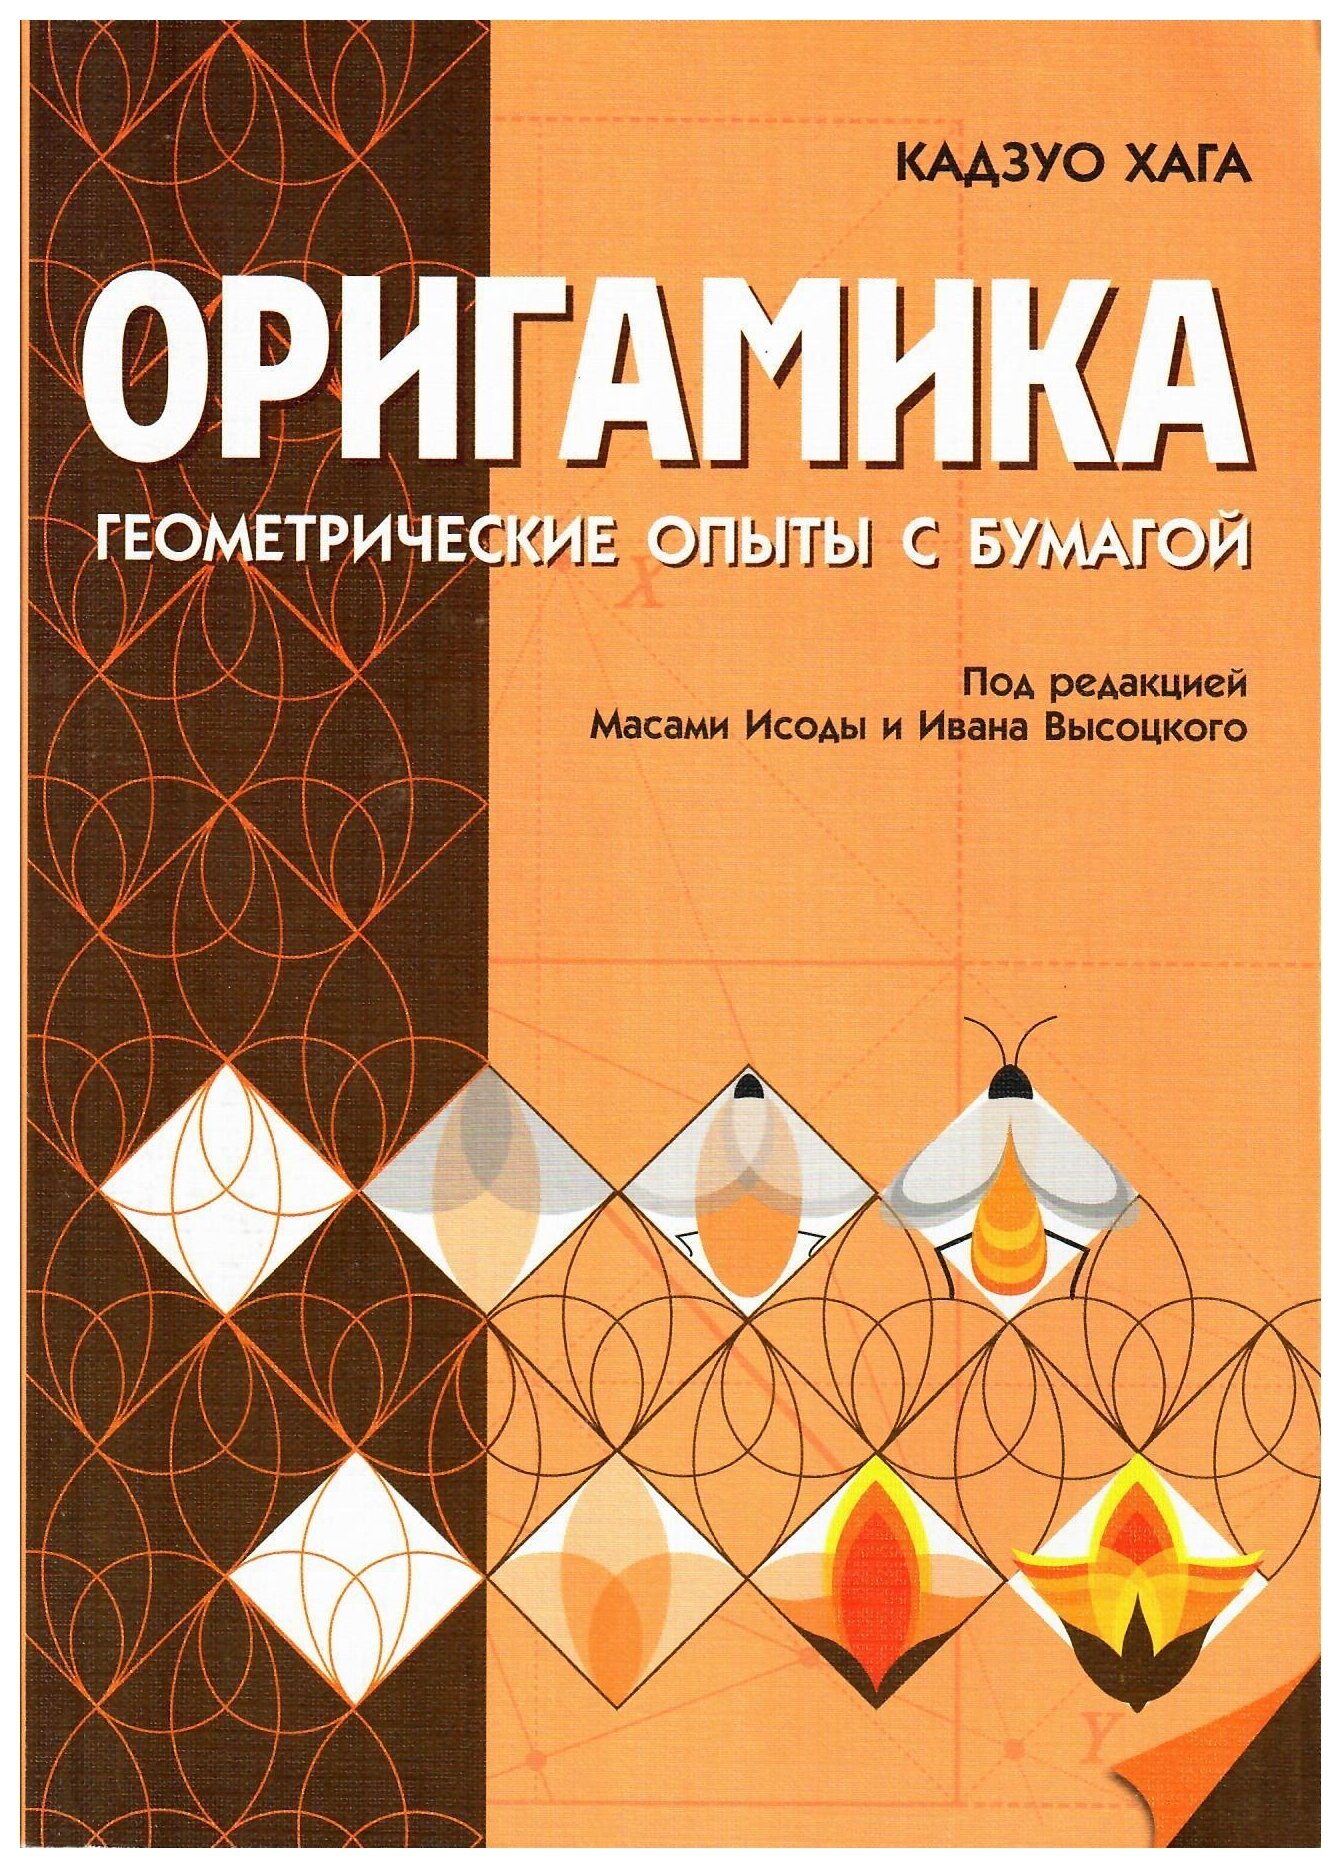 Оригамика Математические опыты с бумагой - фото №1